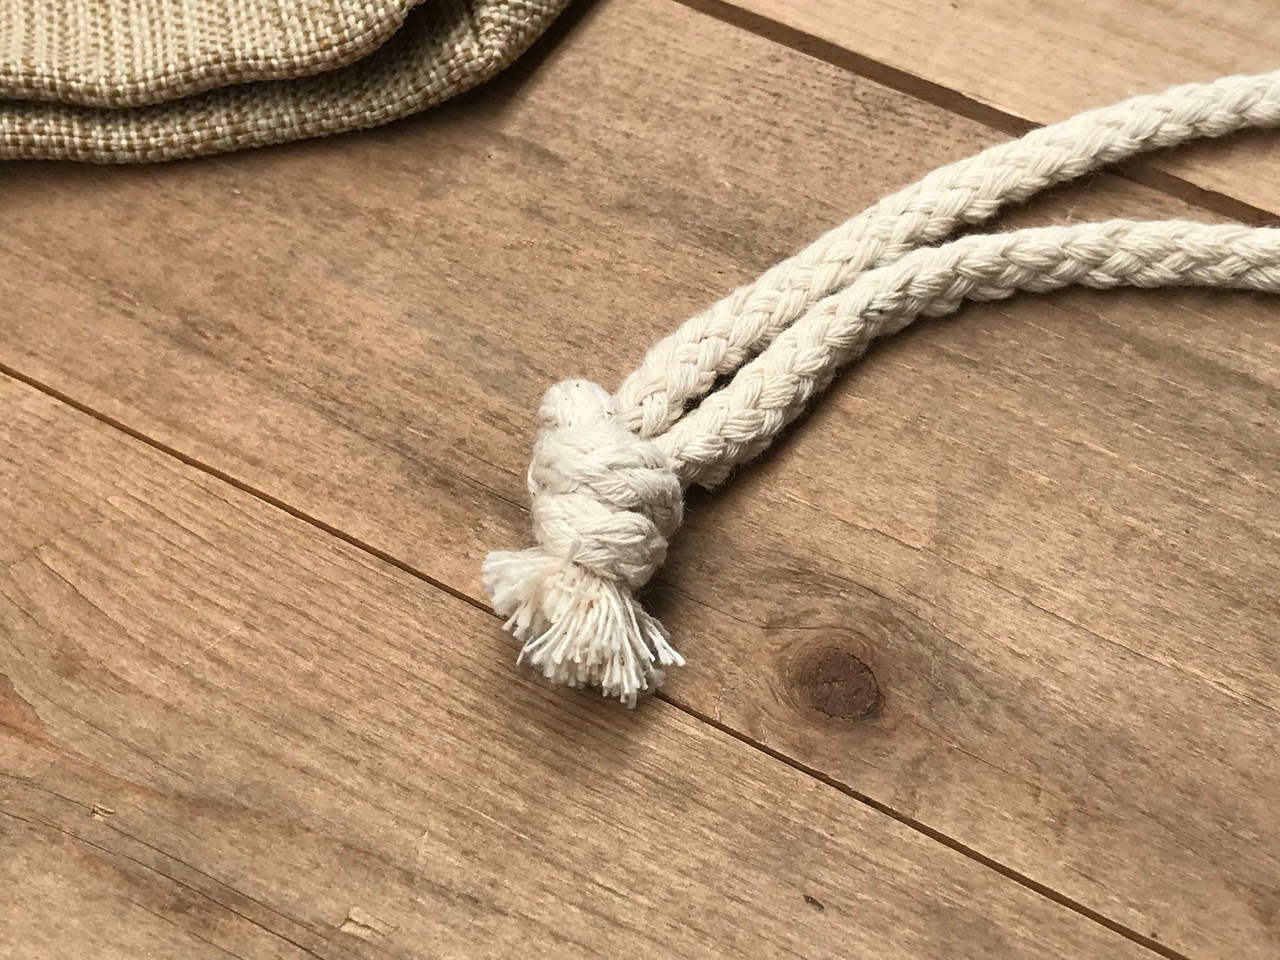 堅固耐重的粗棉繩